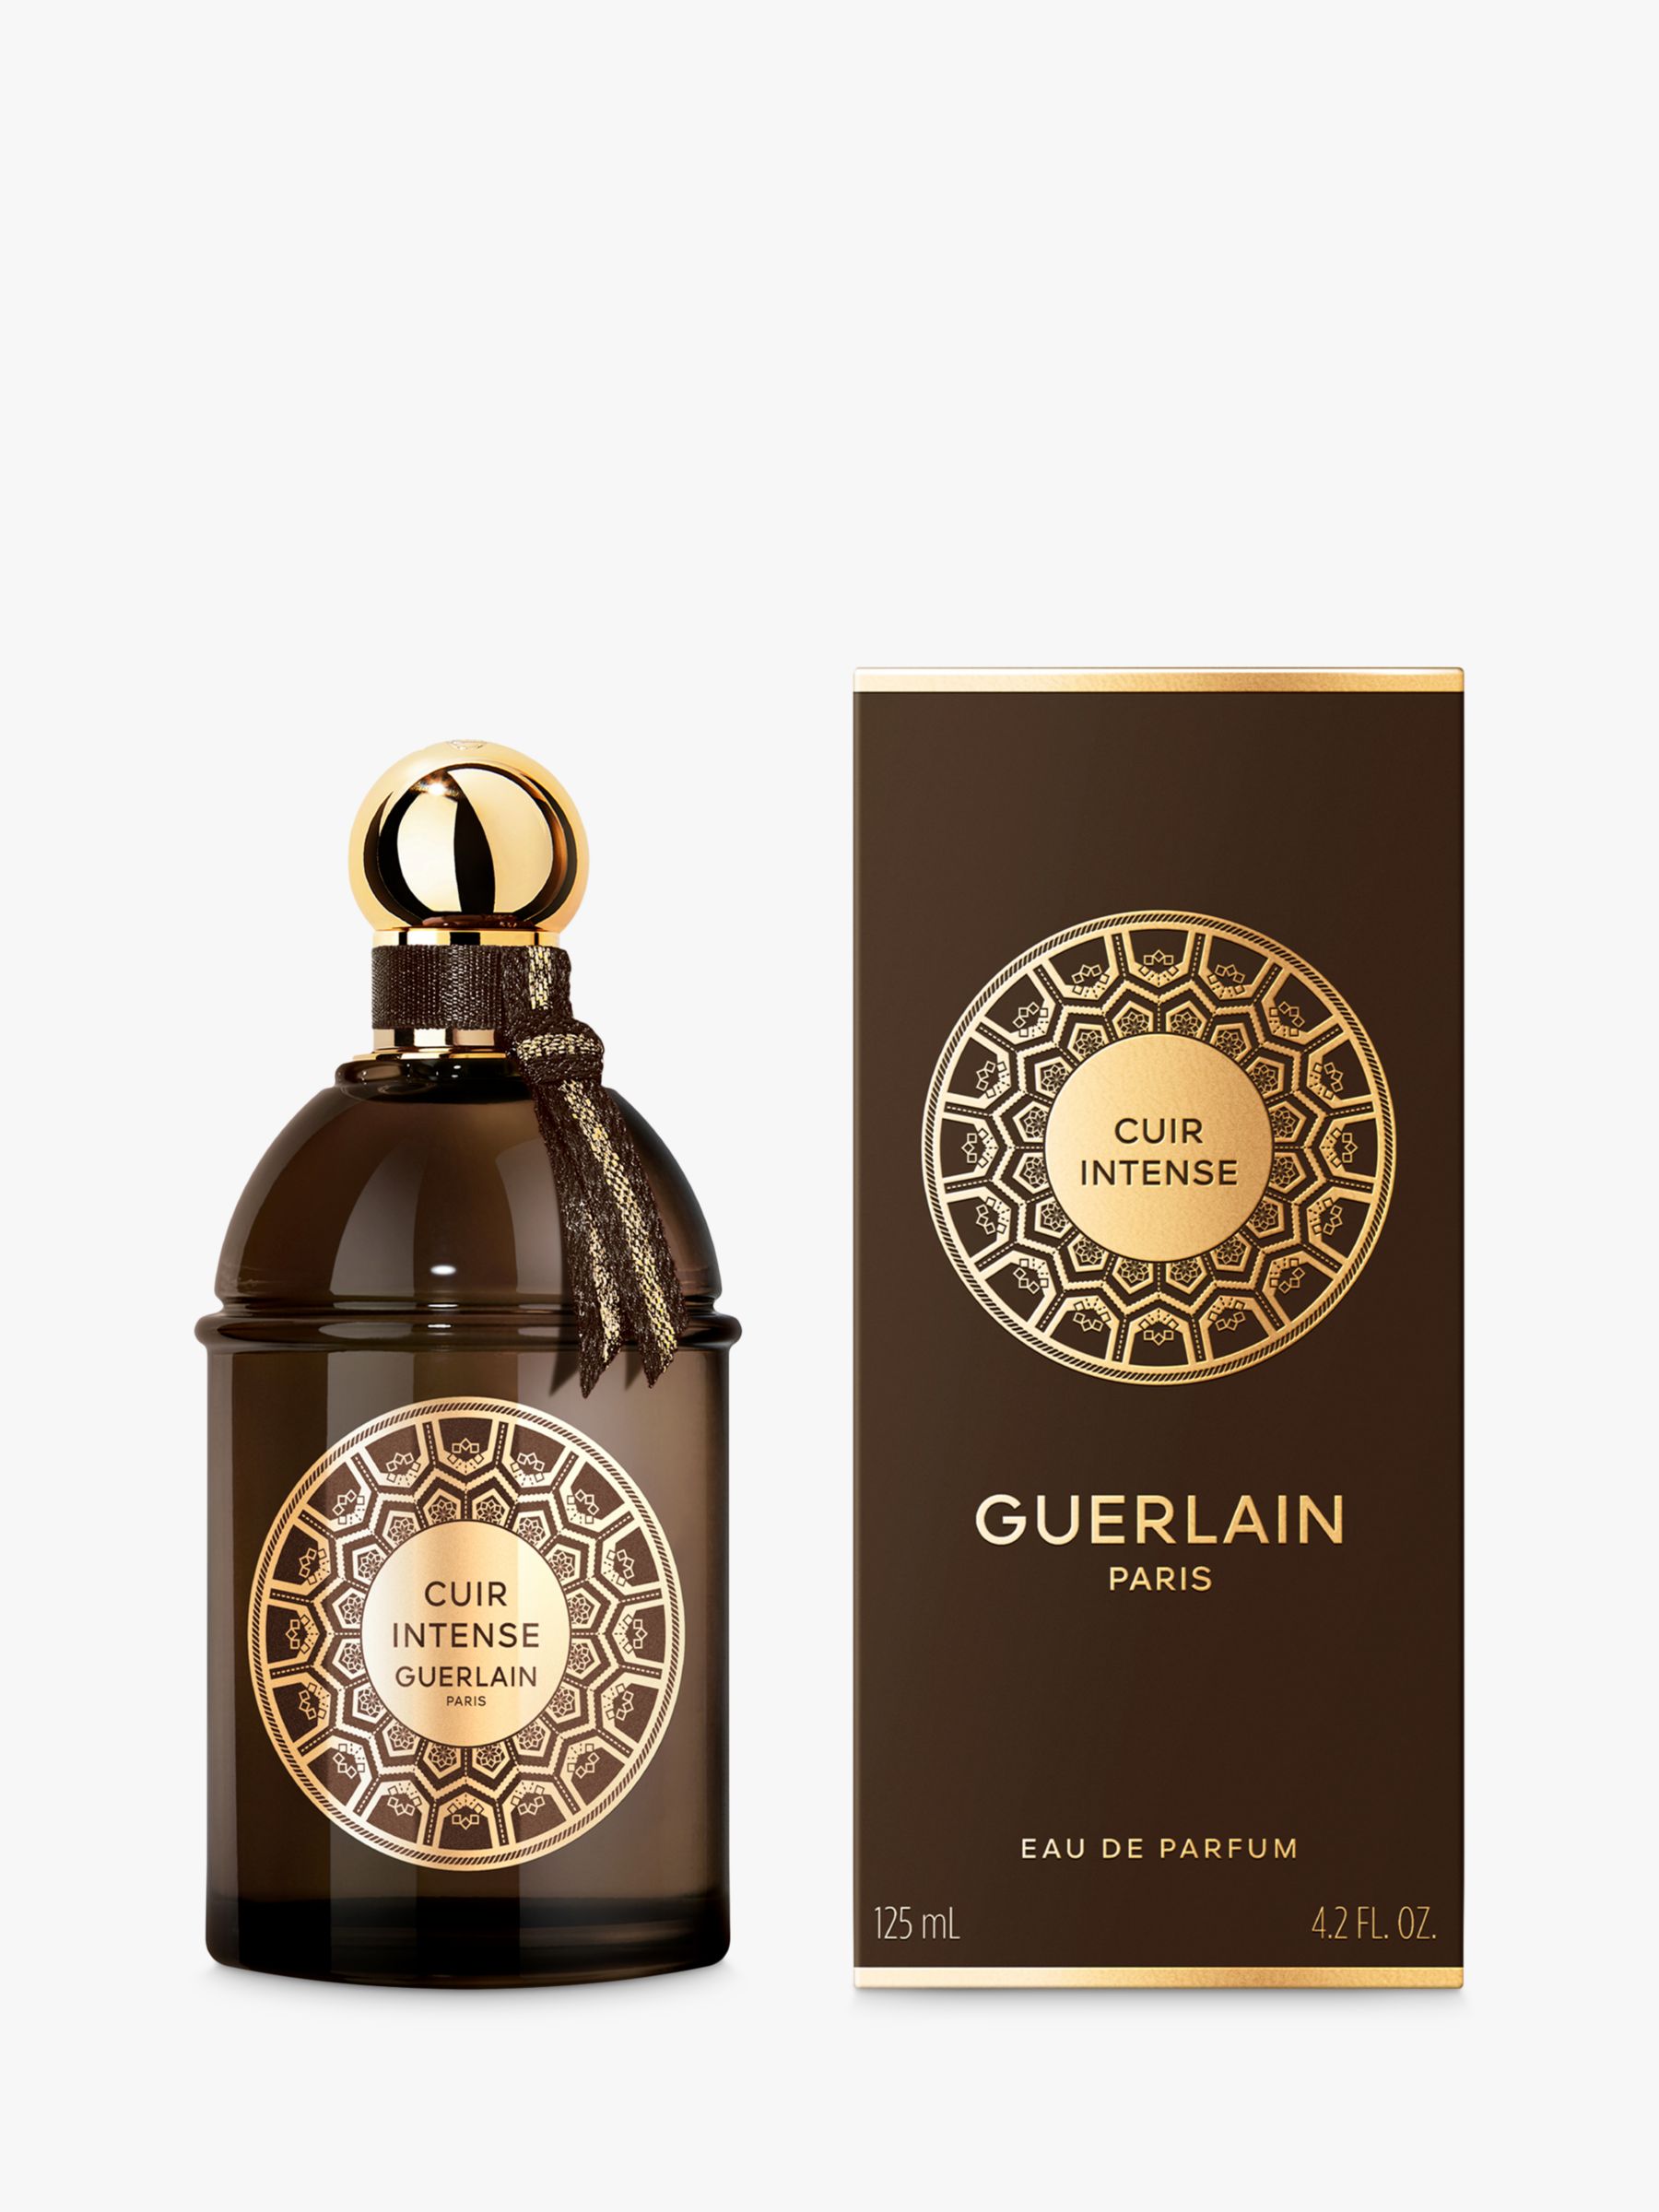 Guerlain Les Absolus d'Orient Cuir Intense Eau de Parfum, 125ml